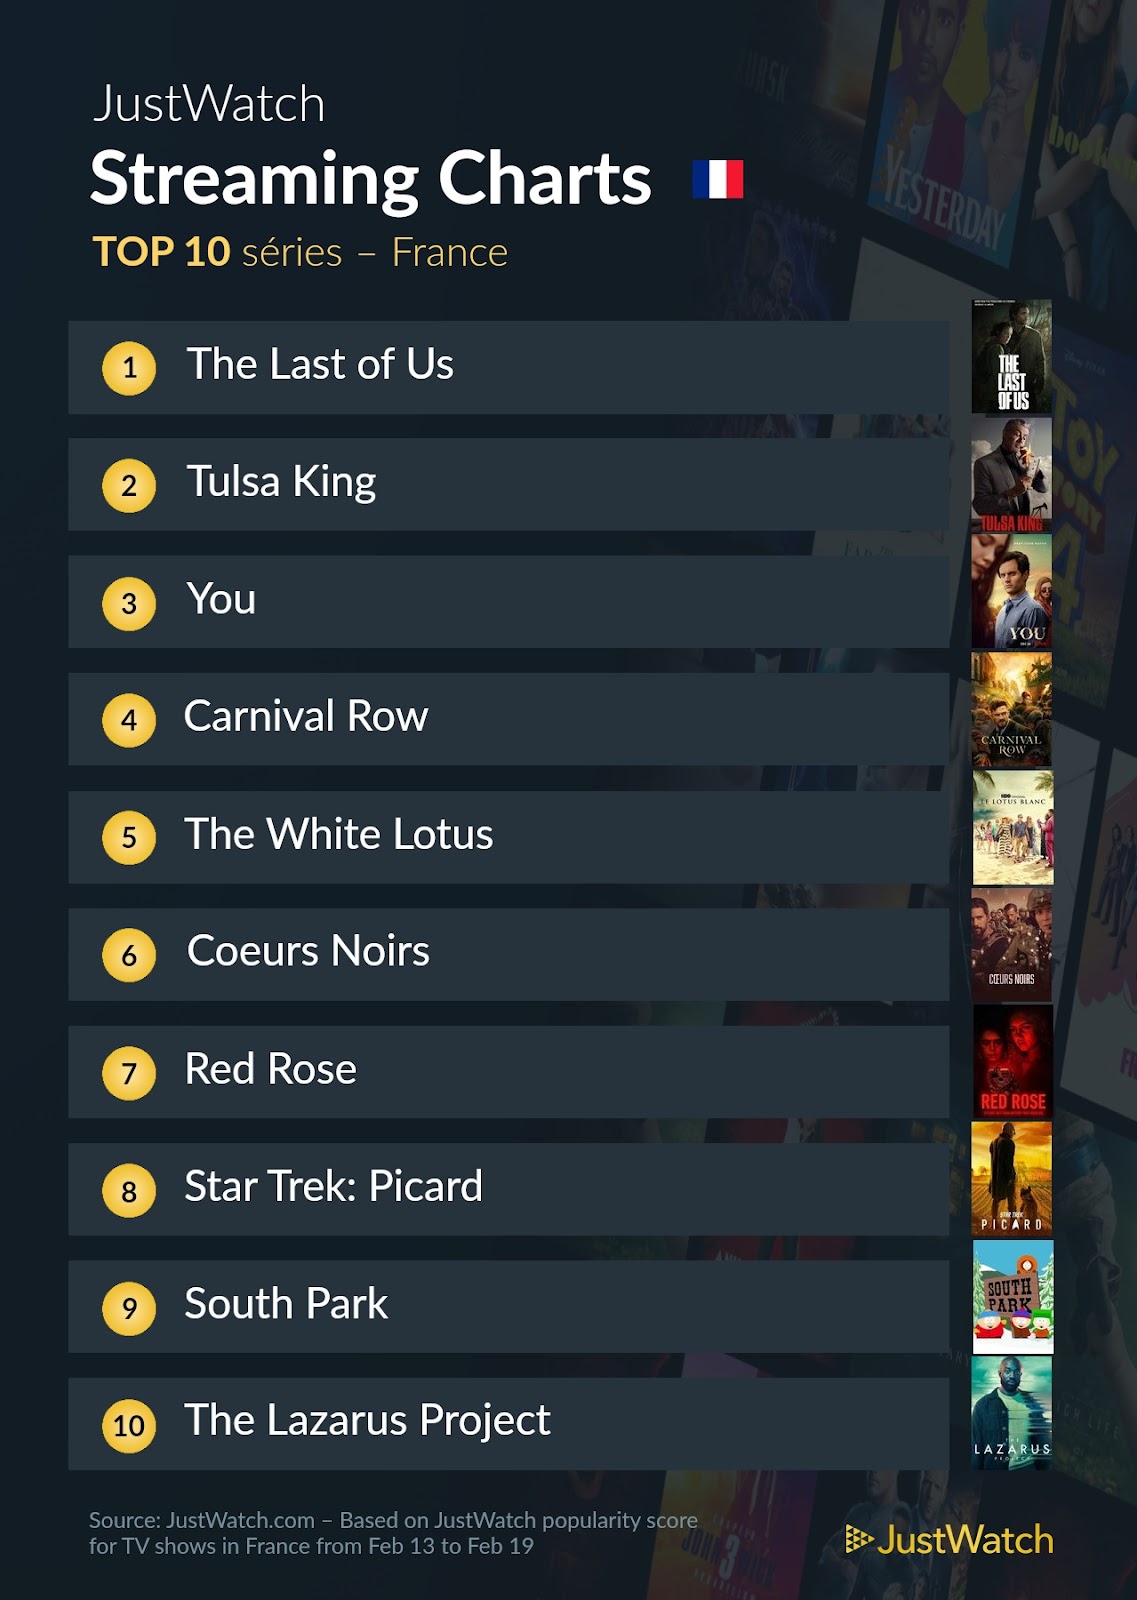 Le top streaming cinéma / séries : "Alibi.com" et "The Last Of Us" répondent toujours présents !